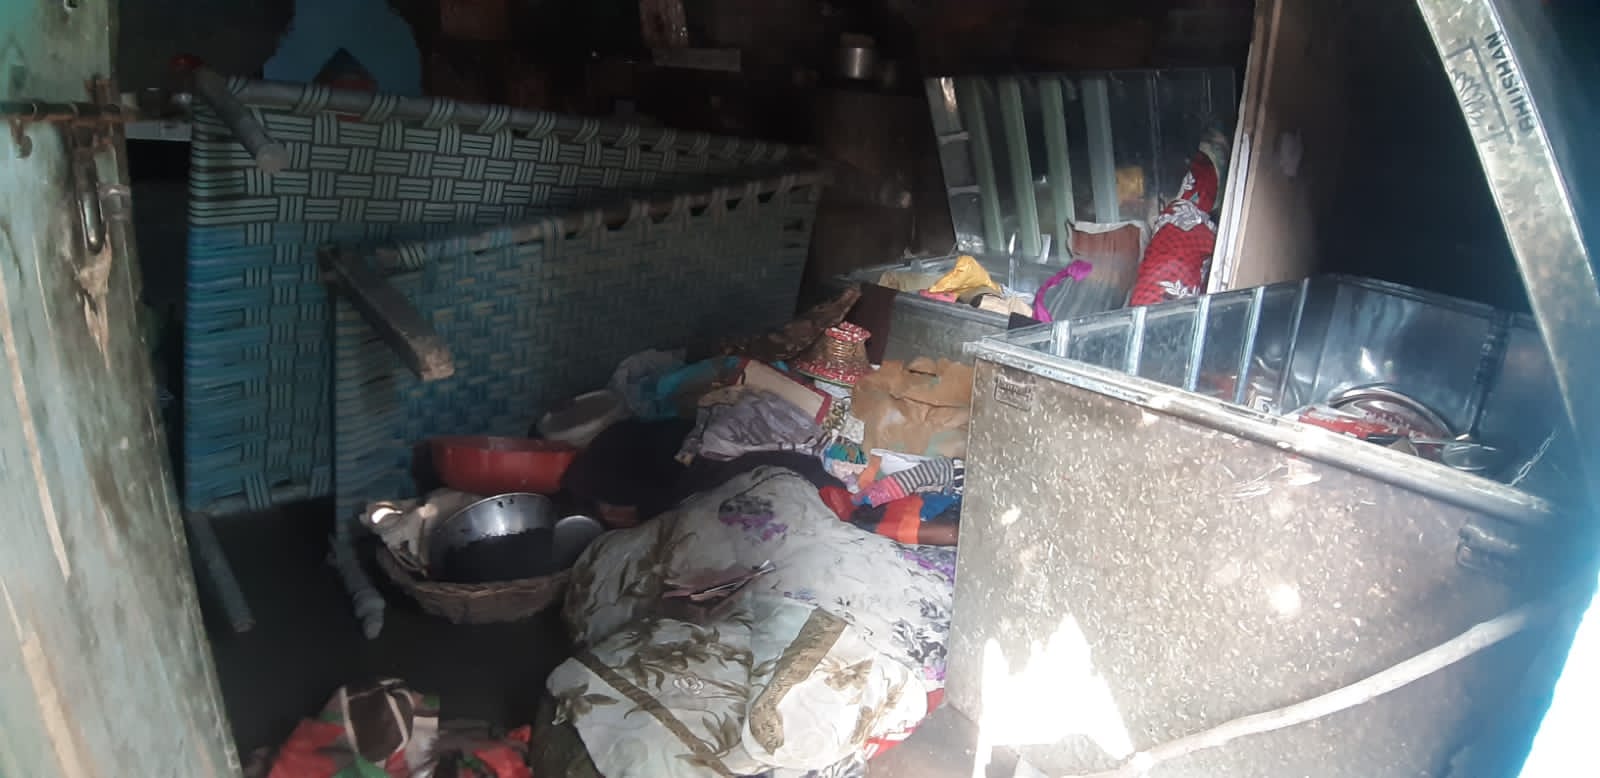 बरेली: देवरनियां में सुस्त पुलिसिंग से चोर हुए सक्रिय, दो घरों को बनाया निशाना